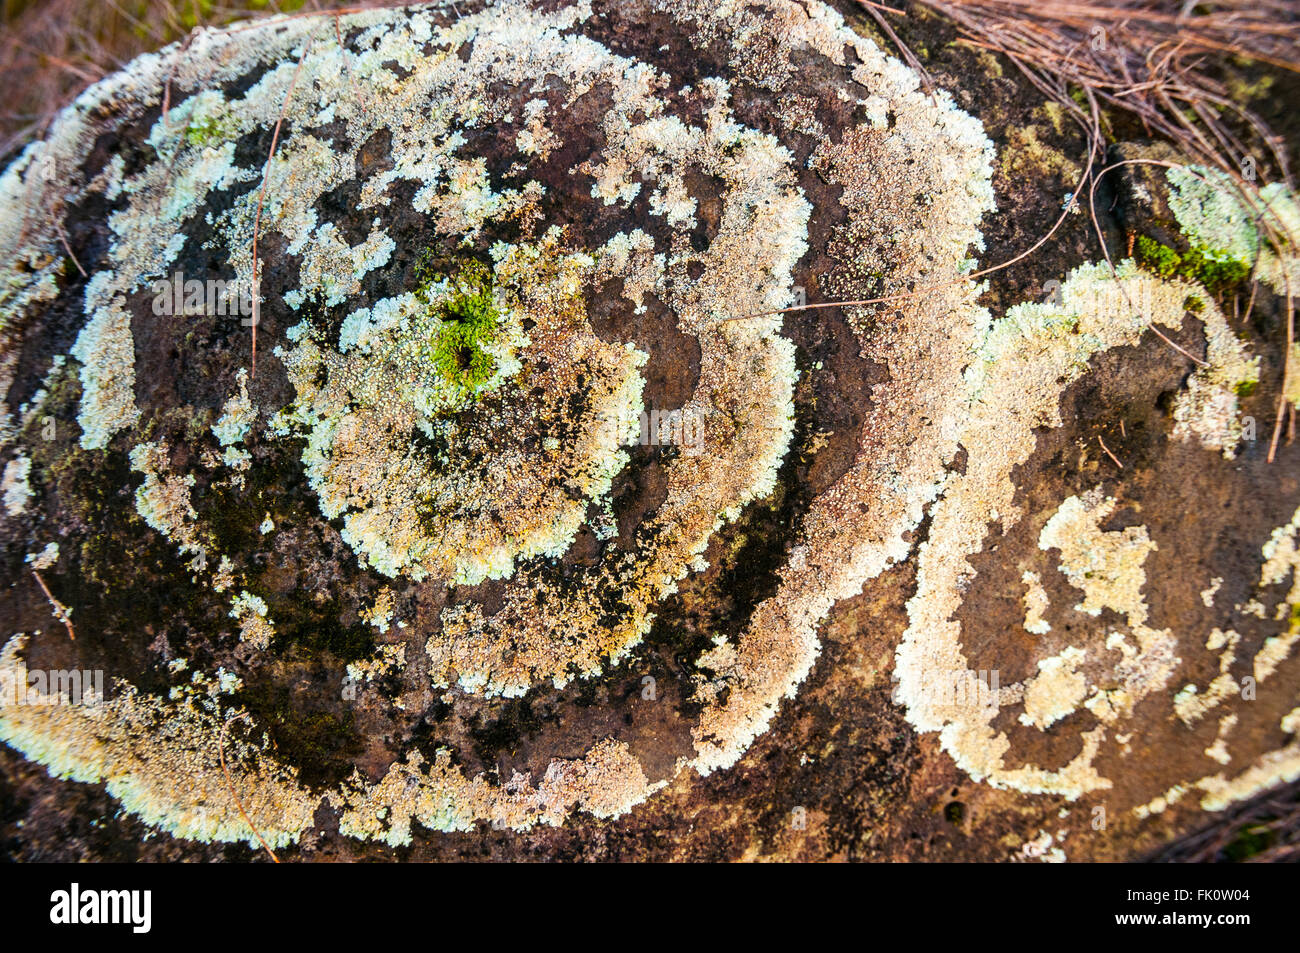 Ringe von Flechten wachsen auf einem großen Stein bilden konzentrische Kreise. Kauai, Hawaii, Vereinigte Staaten von Amerika. Stockfoto